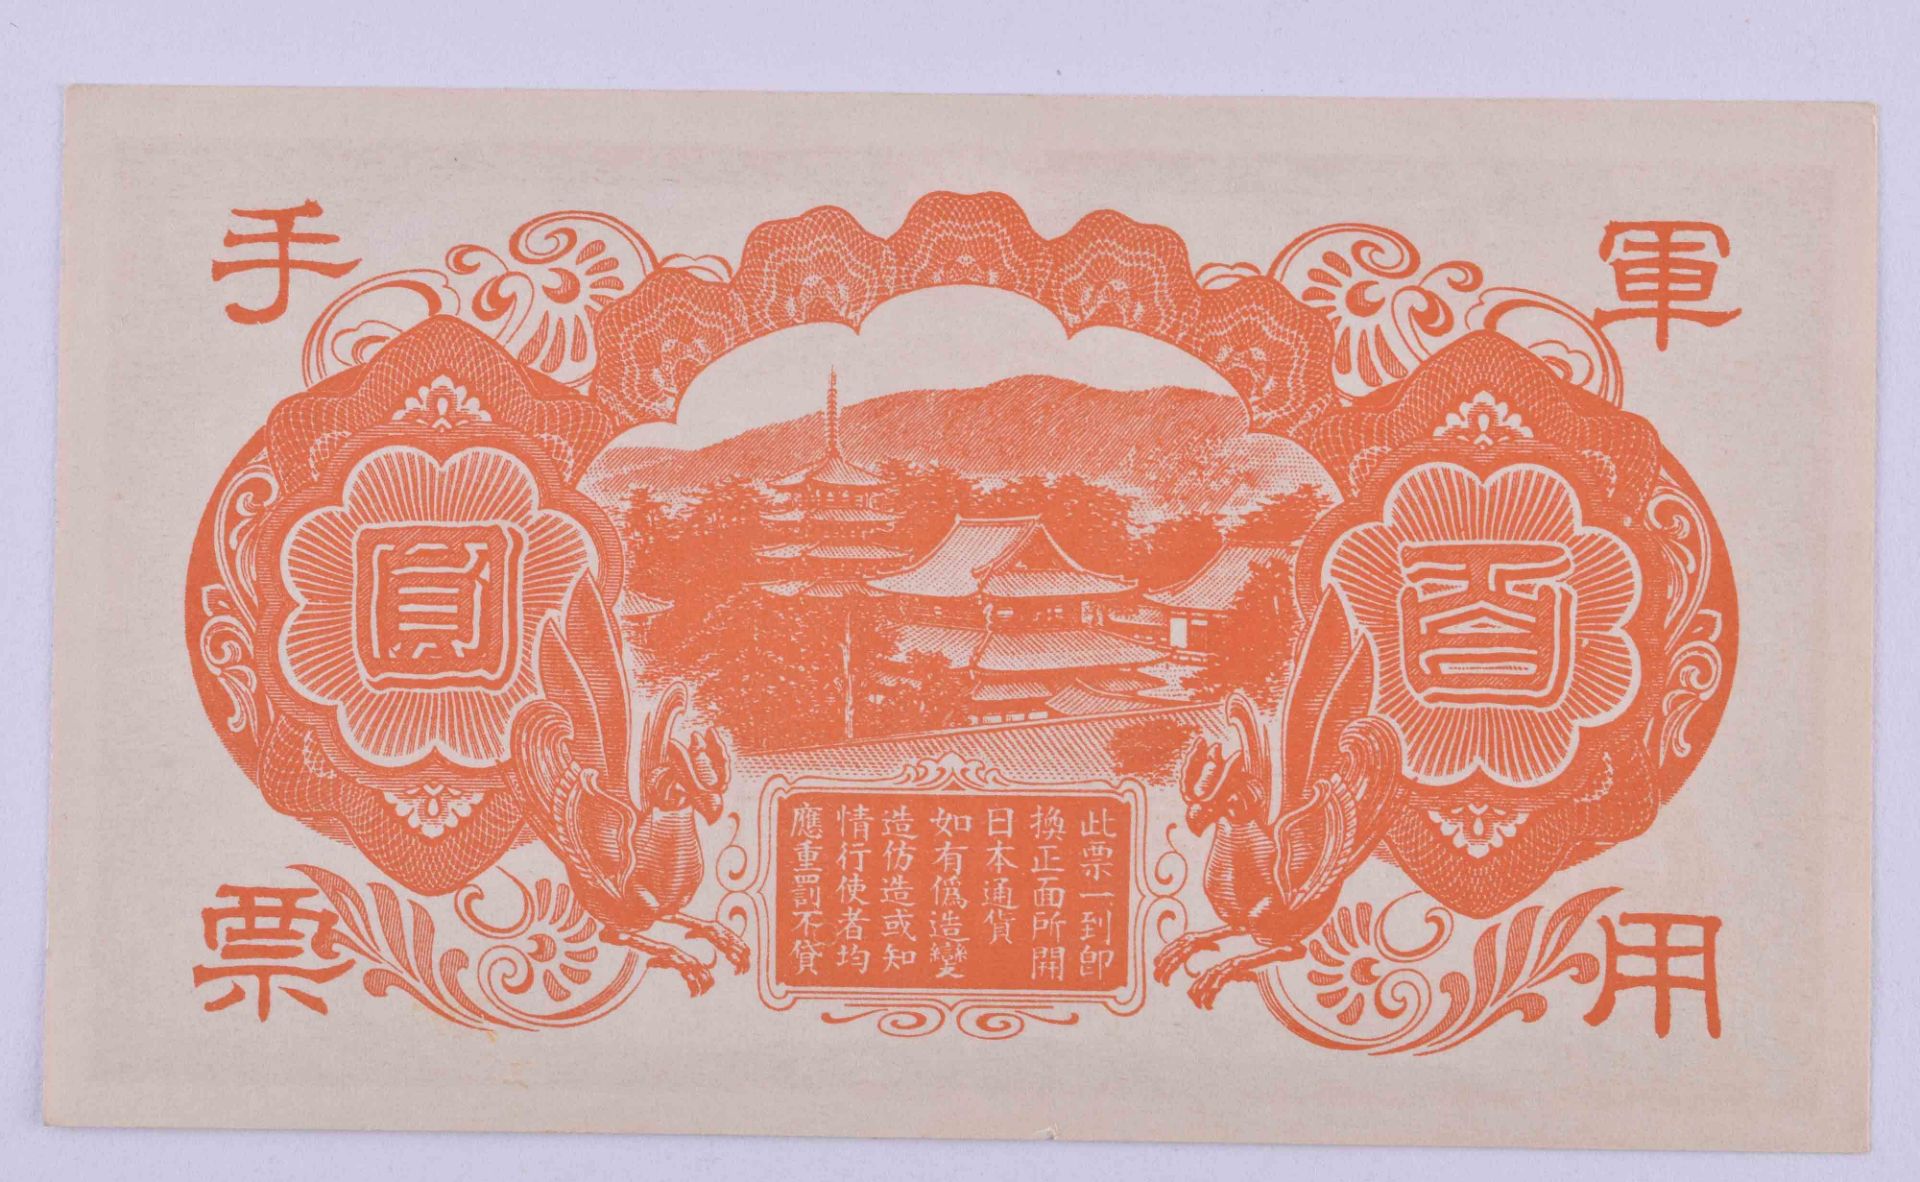 Japan 100 yen 1944 - Image 2 of 2